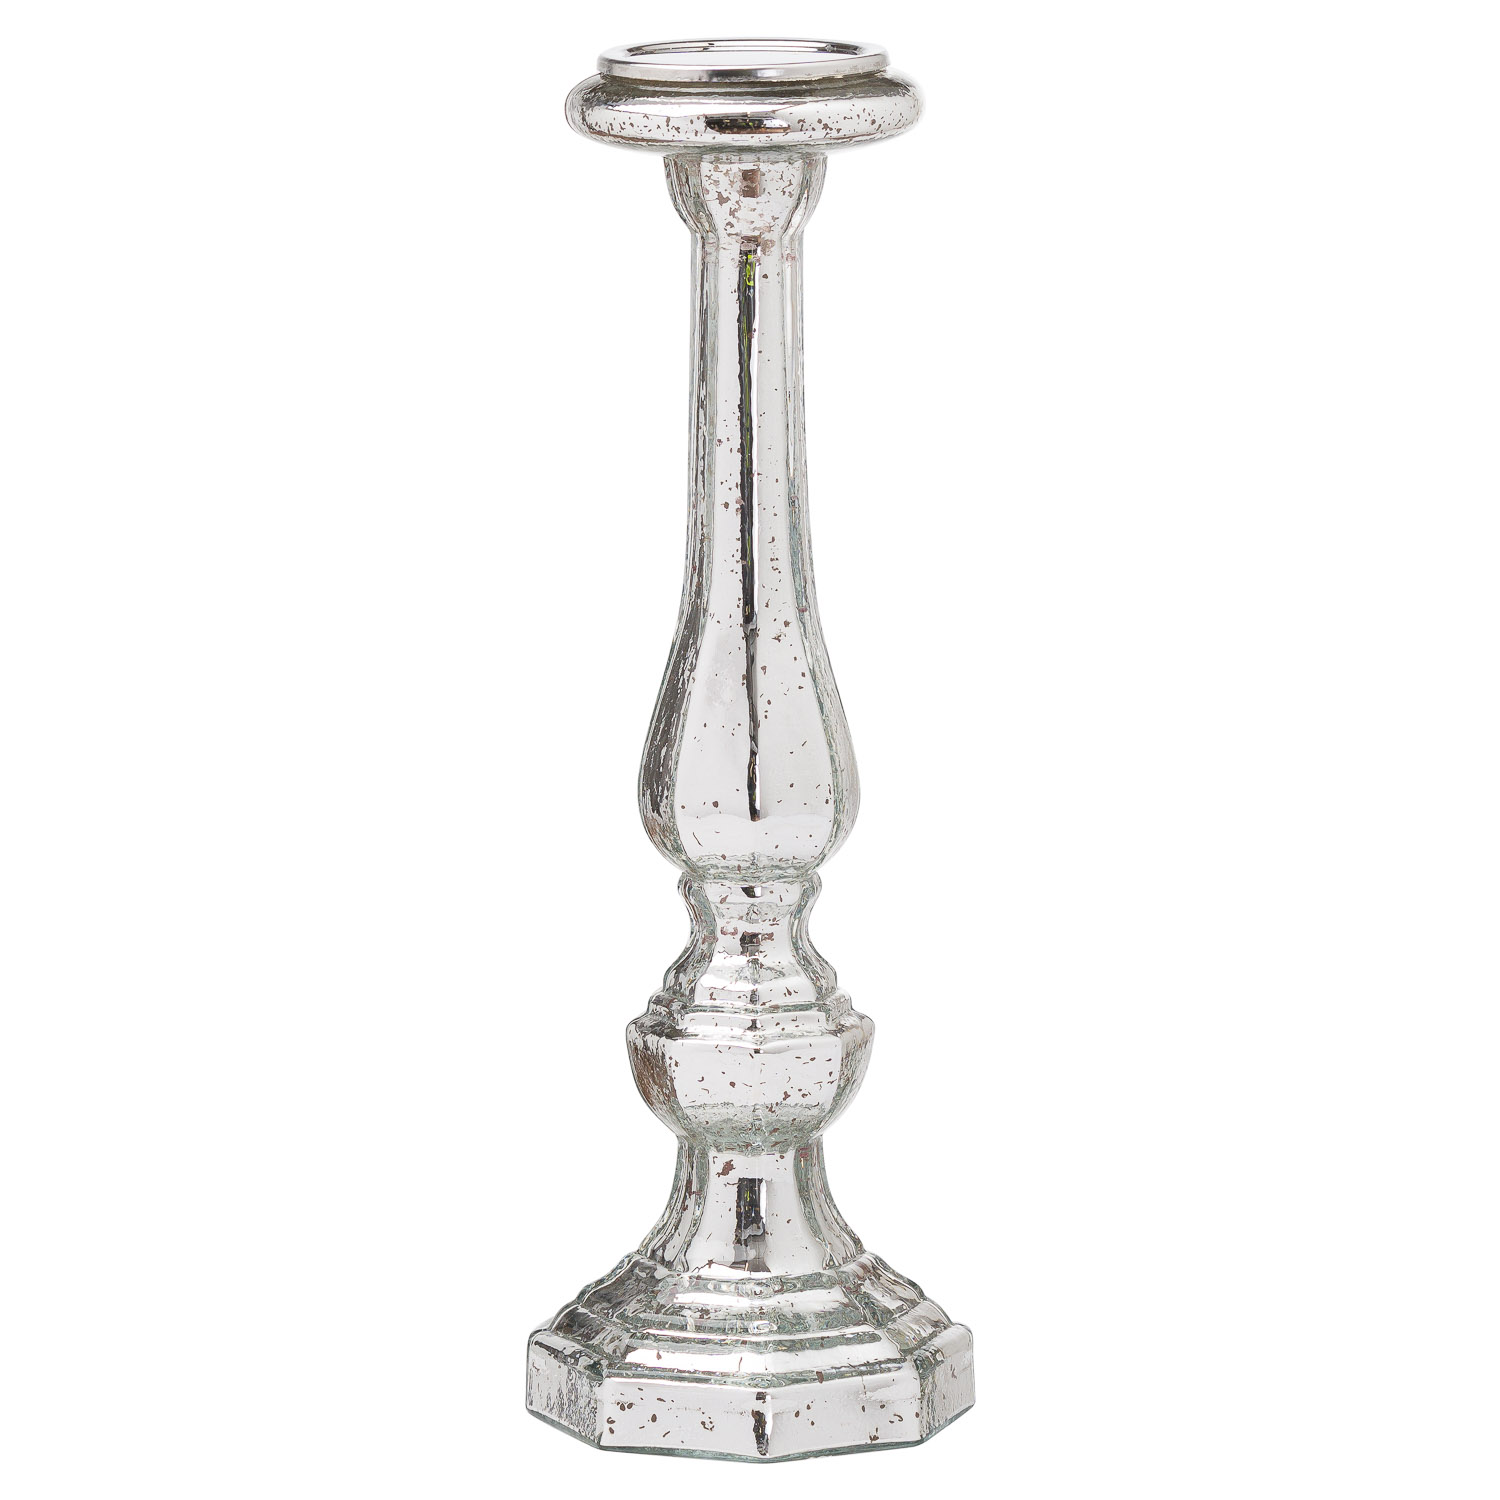 Tall Metallic Hexagonal Candle Pillar - Image 1